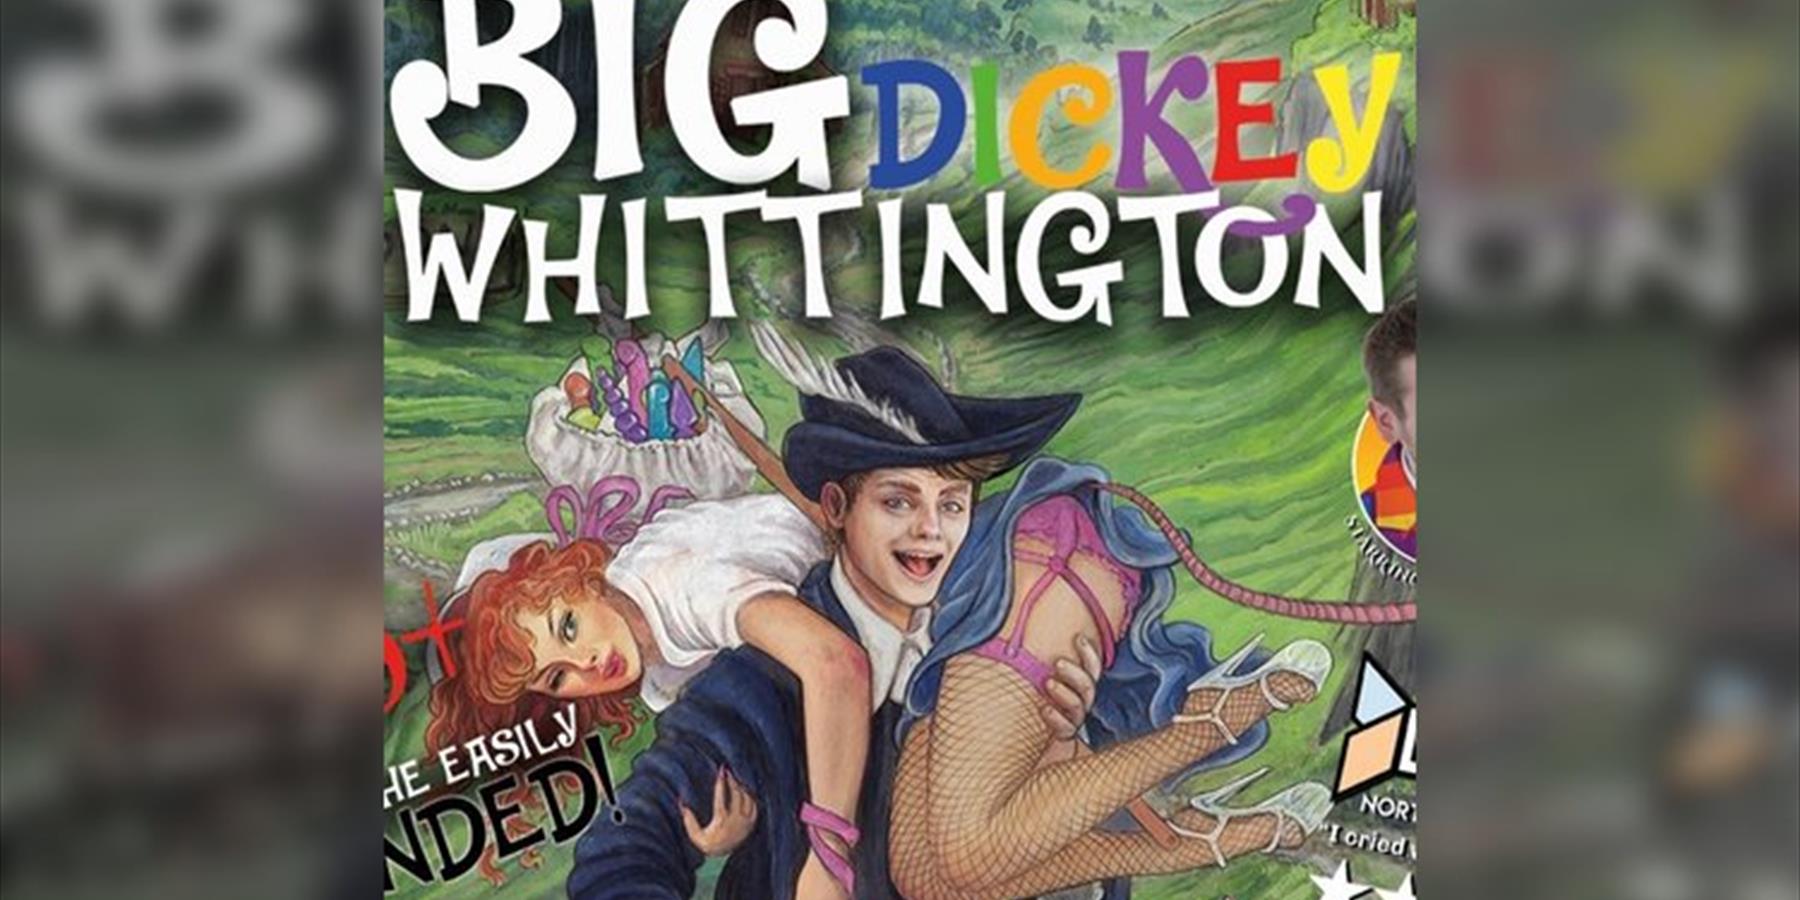 Big Dickey Whittington - Adult Panto